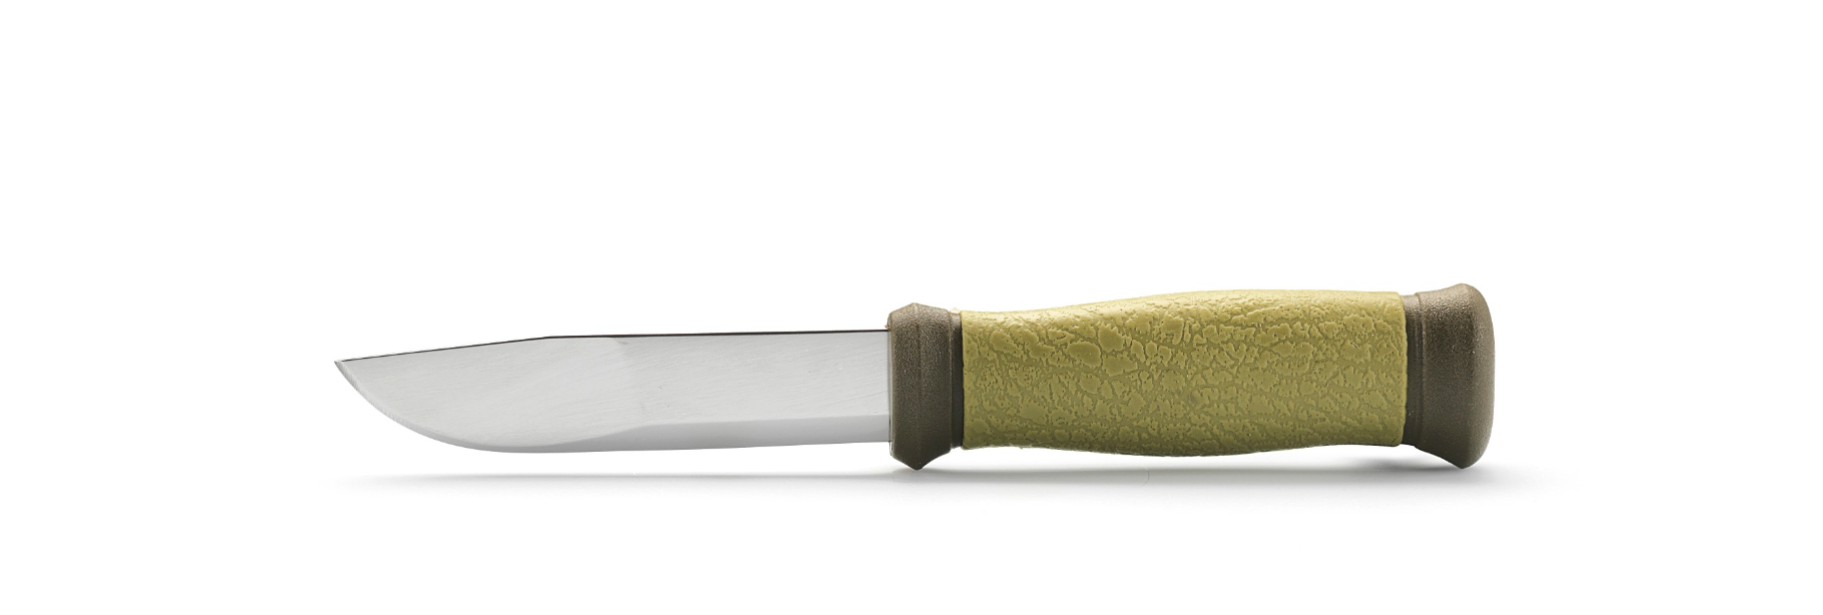 фото Нож с фиксированным лезвием morakniv 2000, сталь sandvik 12c27, рукоять пластик/резина, зеленый